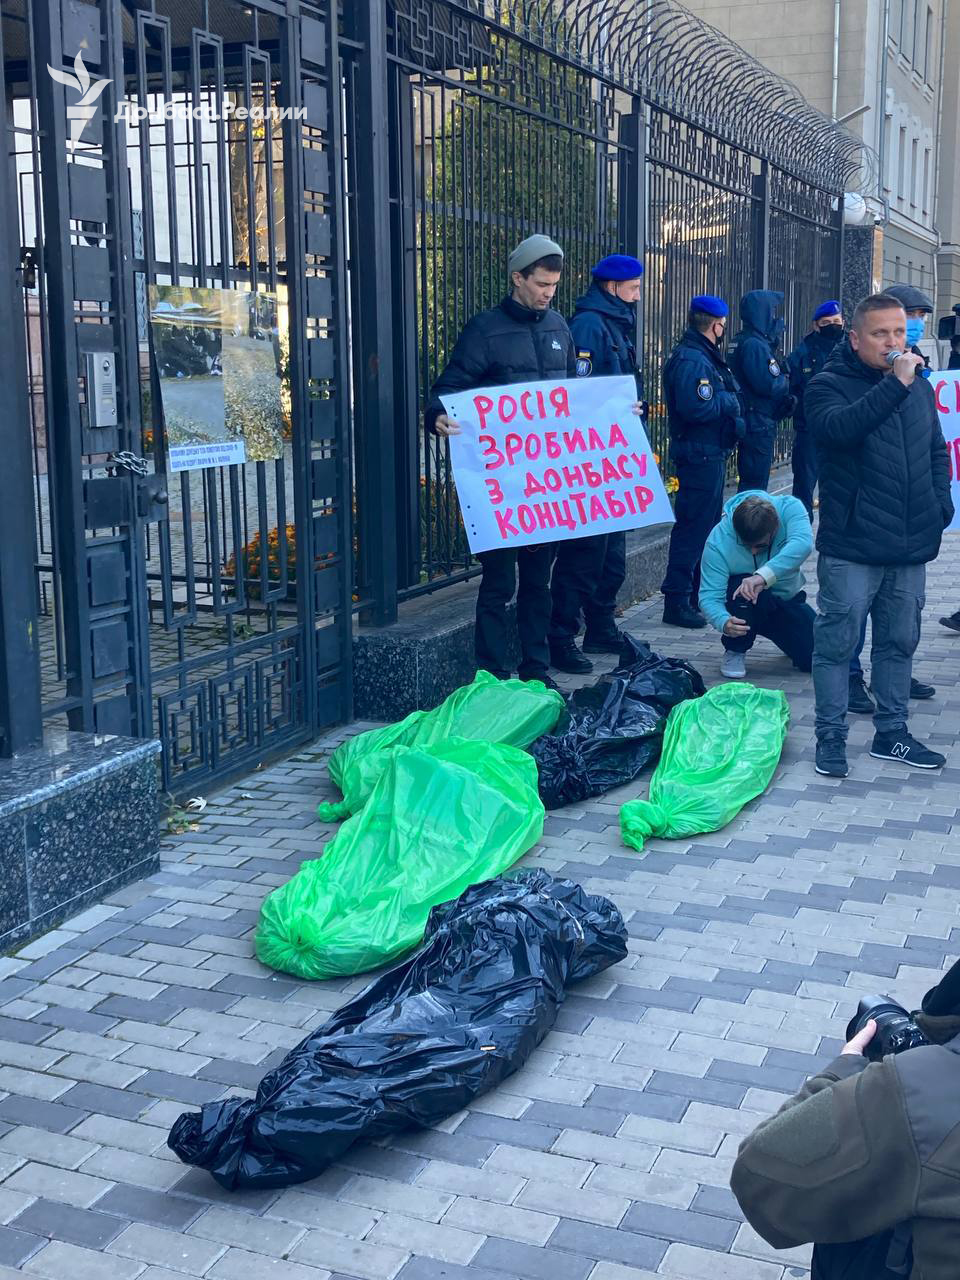 Ковид в оккупации. Под посольство РФ в Киеве принесли мешки с "трупами" – фото